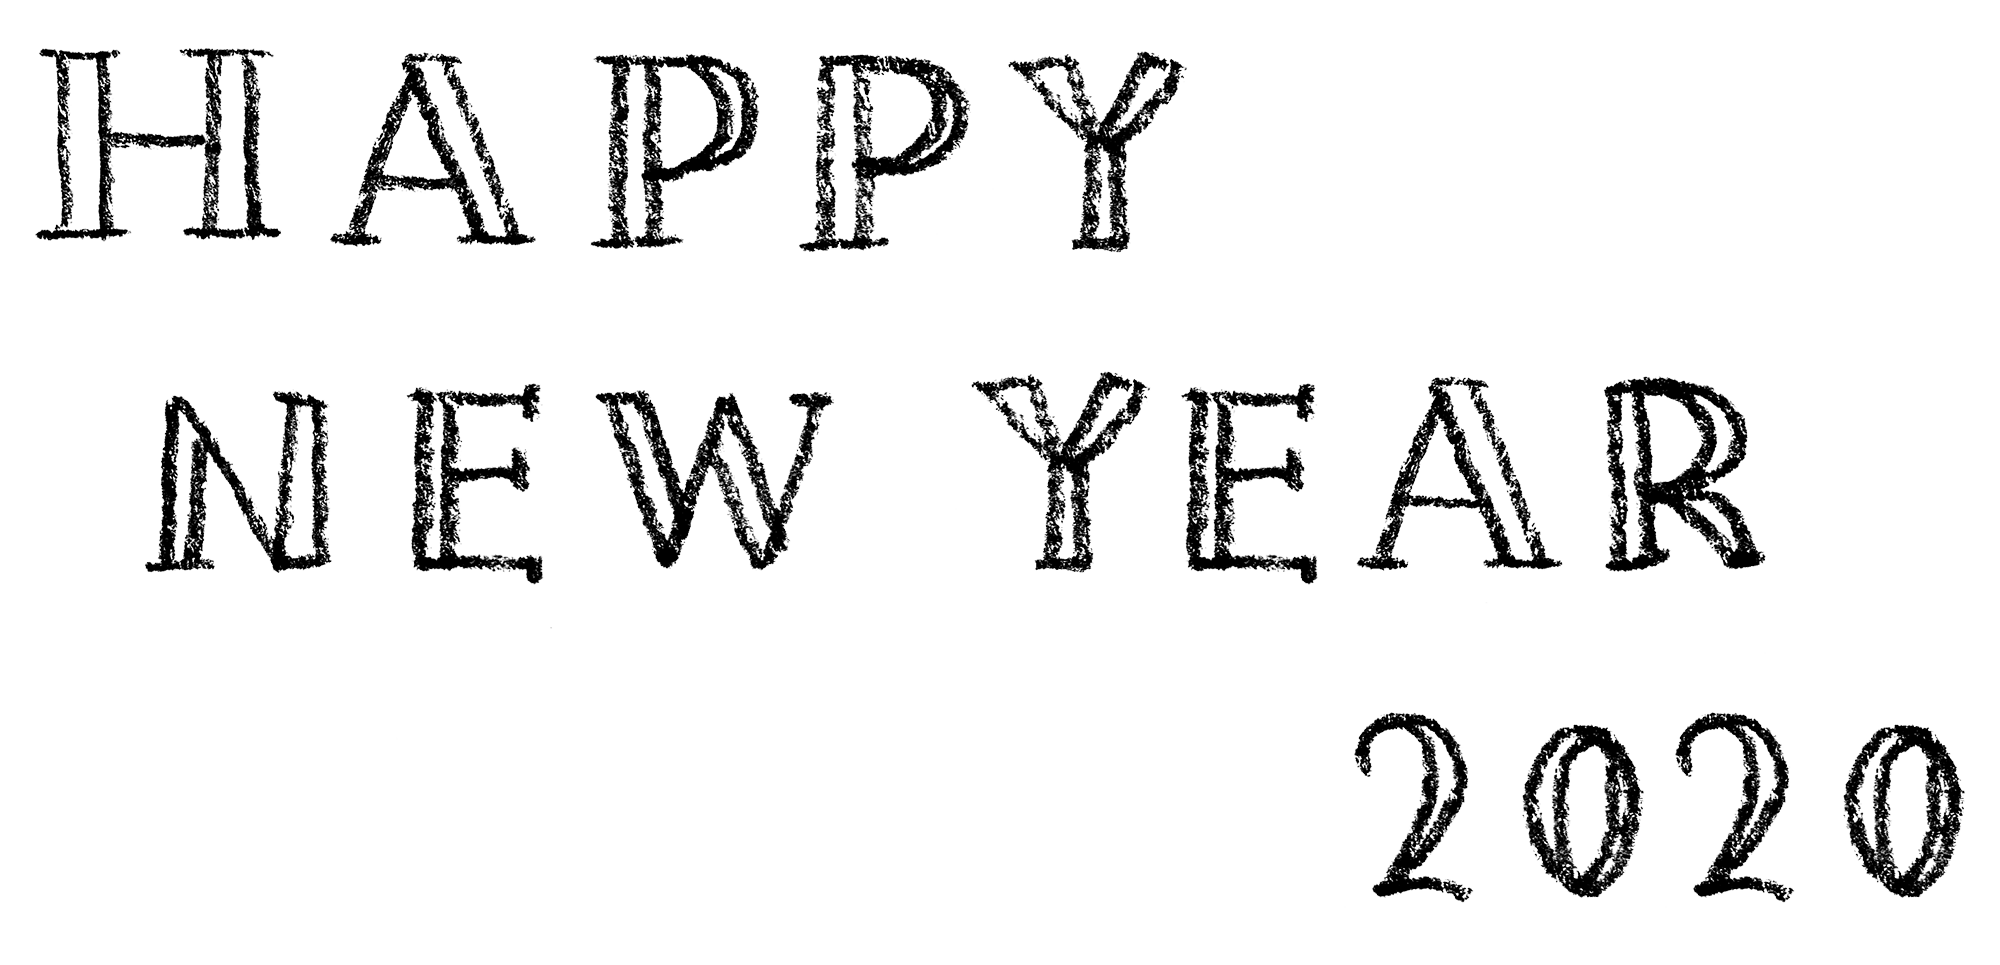 Happy New Year 2020 おしゃれでかわいい手書き文字 えんぴつと画用紙